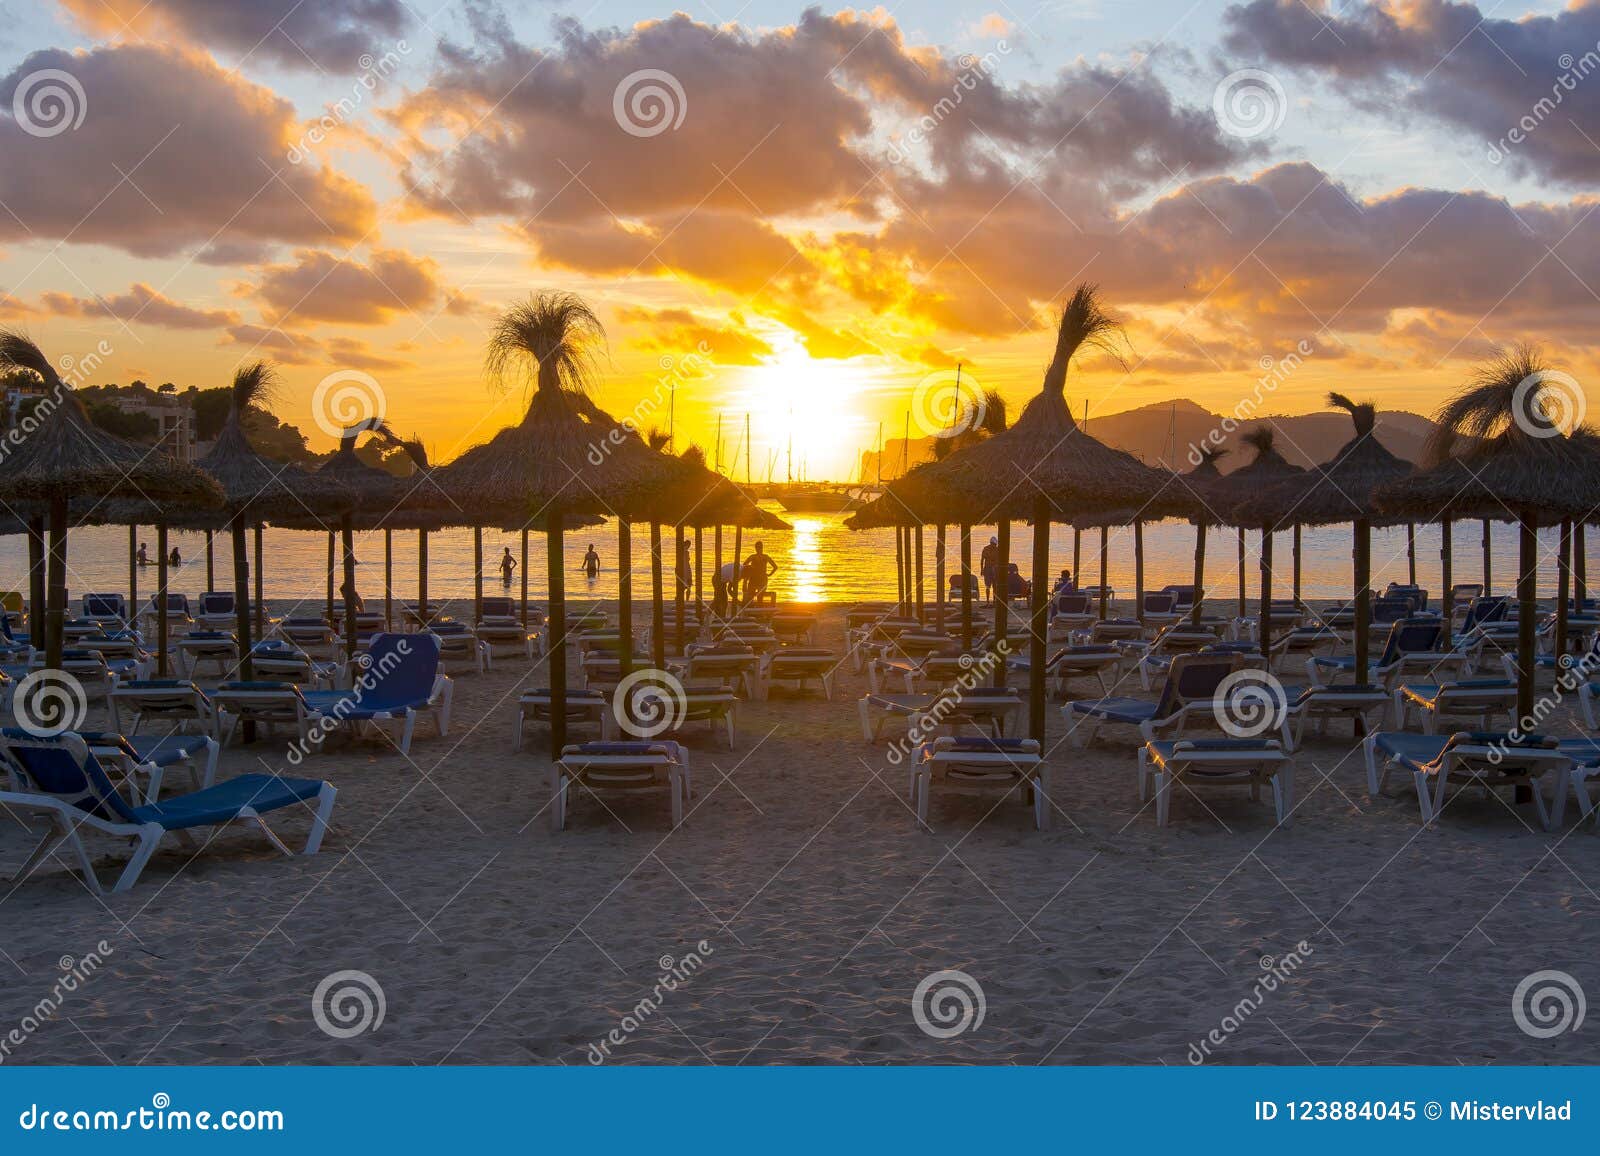 sunset on santa ponsa beach playa, mallorca, spain